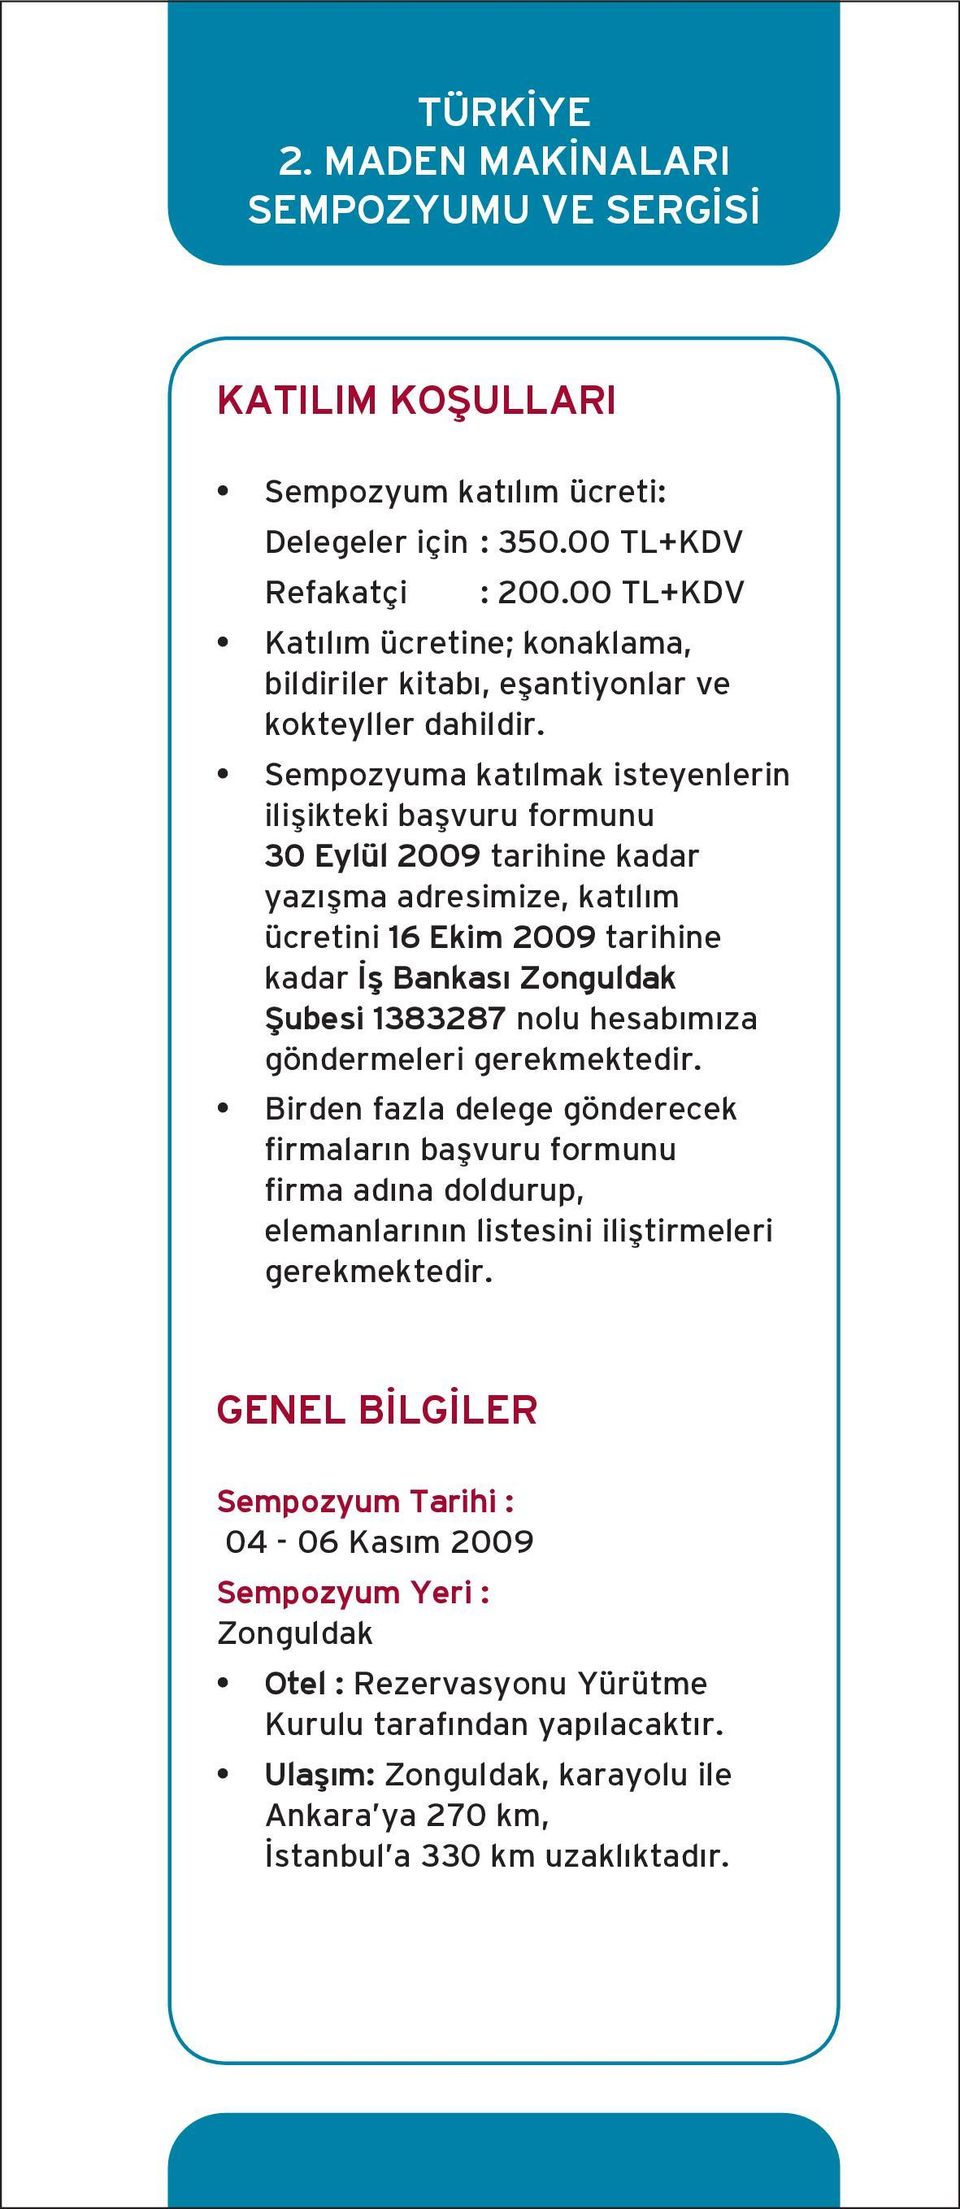 Sempozyuma katılmak isteyenlerin ilişikteki başvuru formunu 30 Eylül 2009 tarihine kadar yazışma adresimize, katılım ücretini 16 Ekim 2009 tarihine kadar İş Bankası Zonguldak Şubesi 1383287 nolu